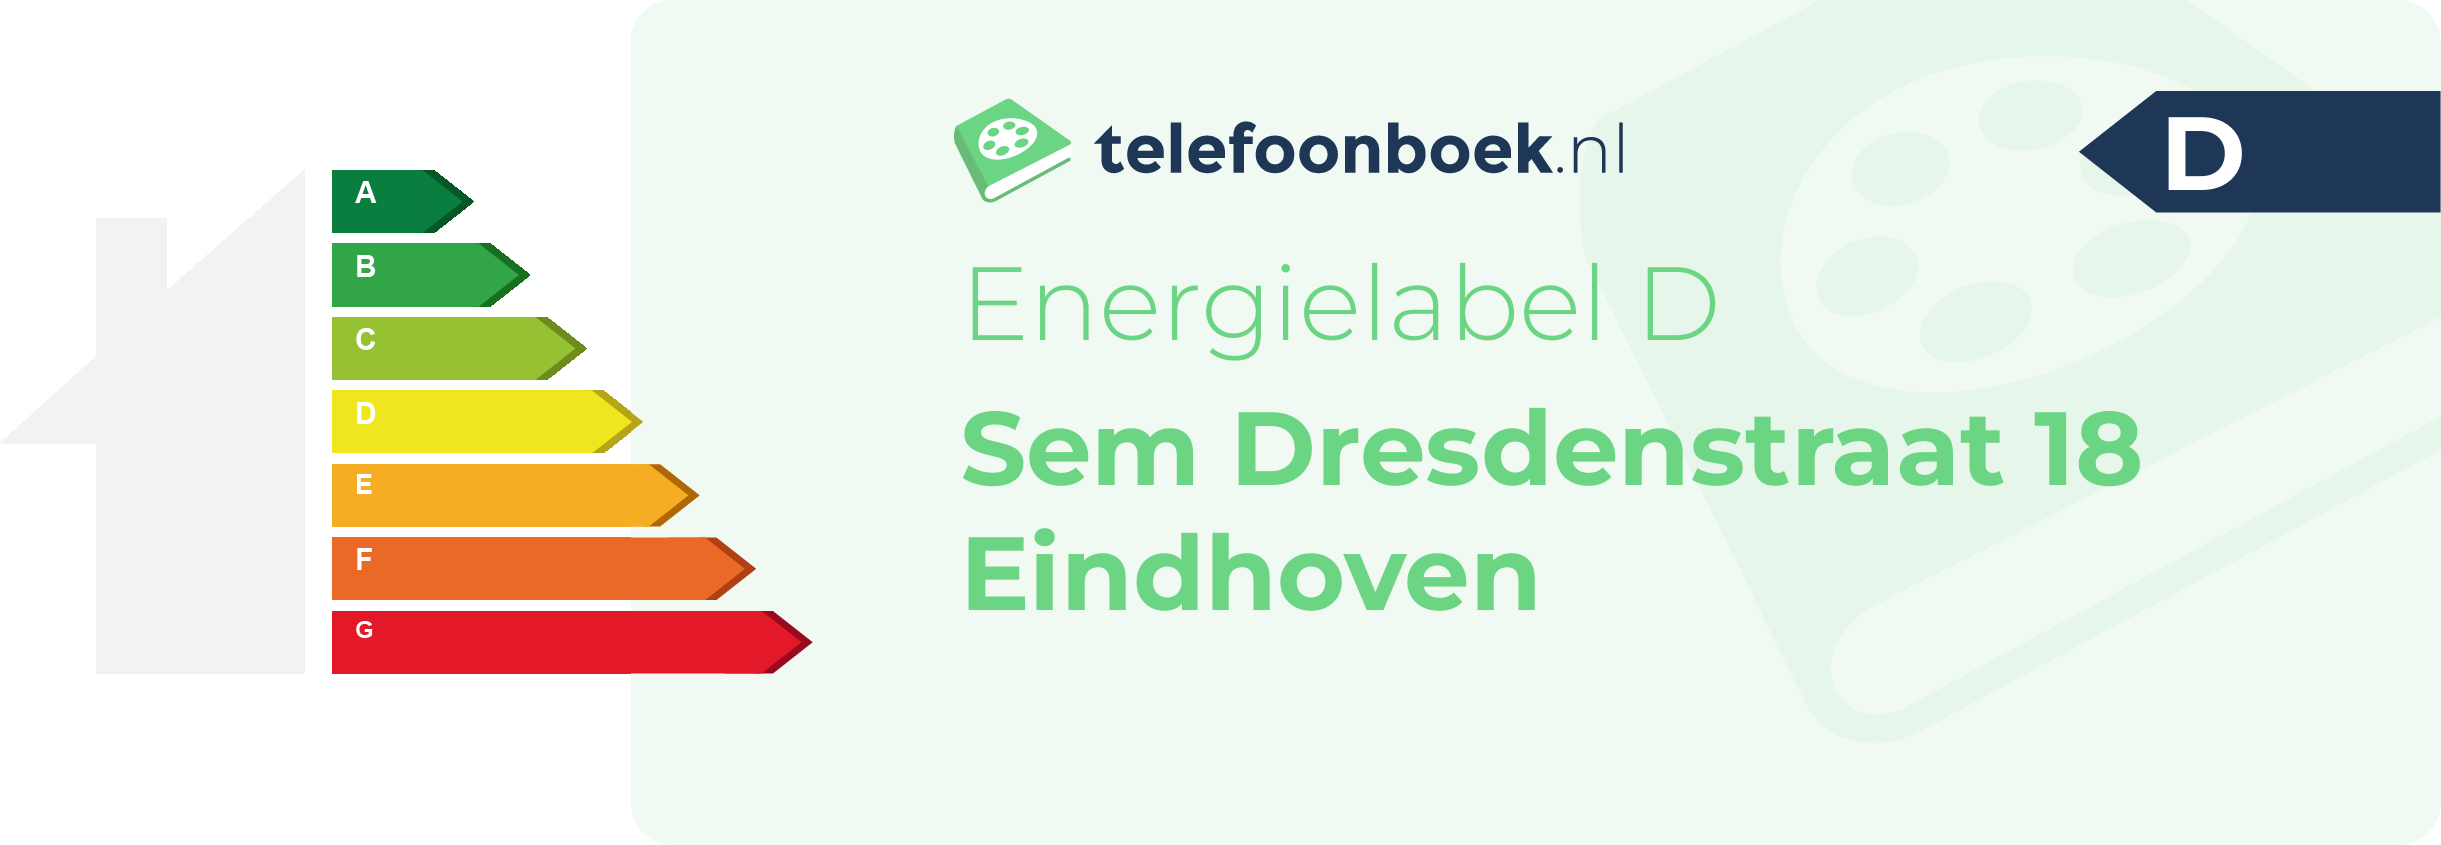 Energielabel Sem Dresdenstraat 18 Eindhoven